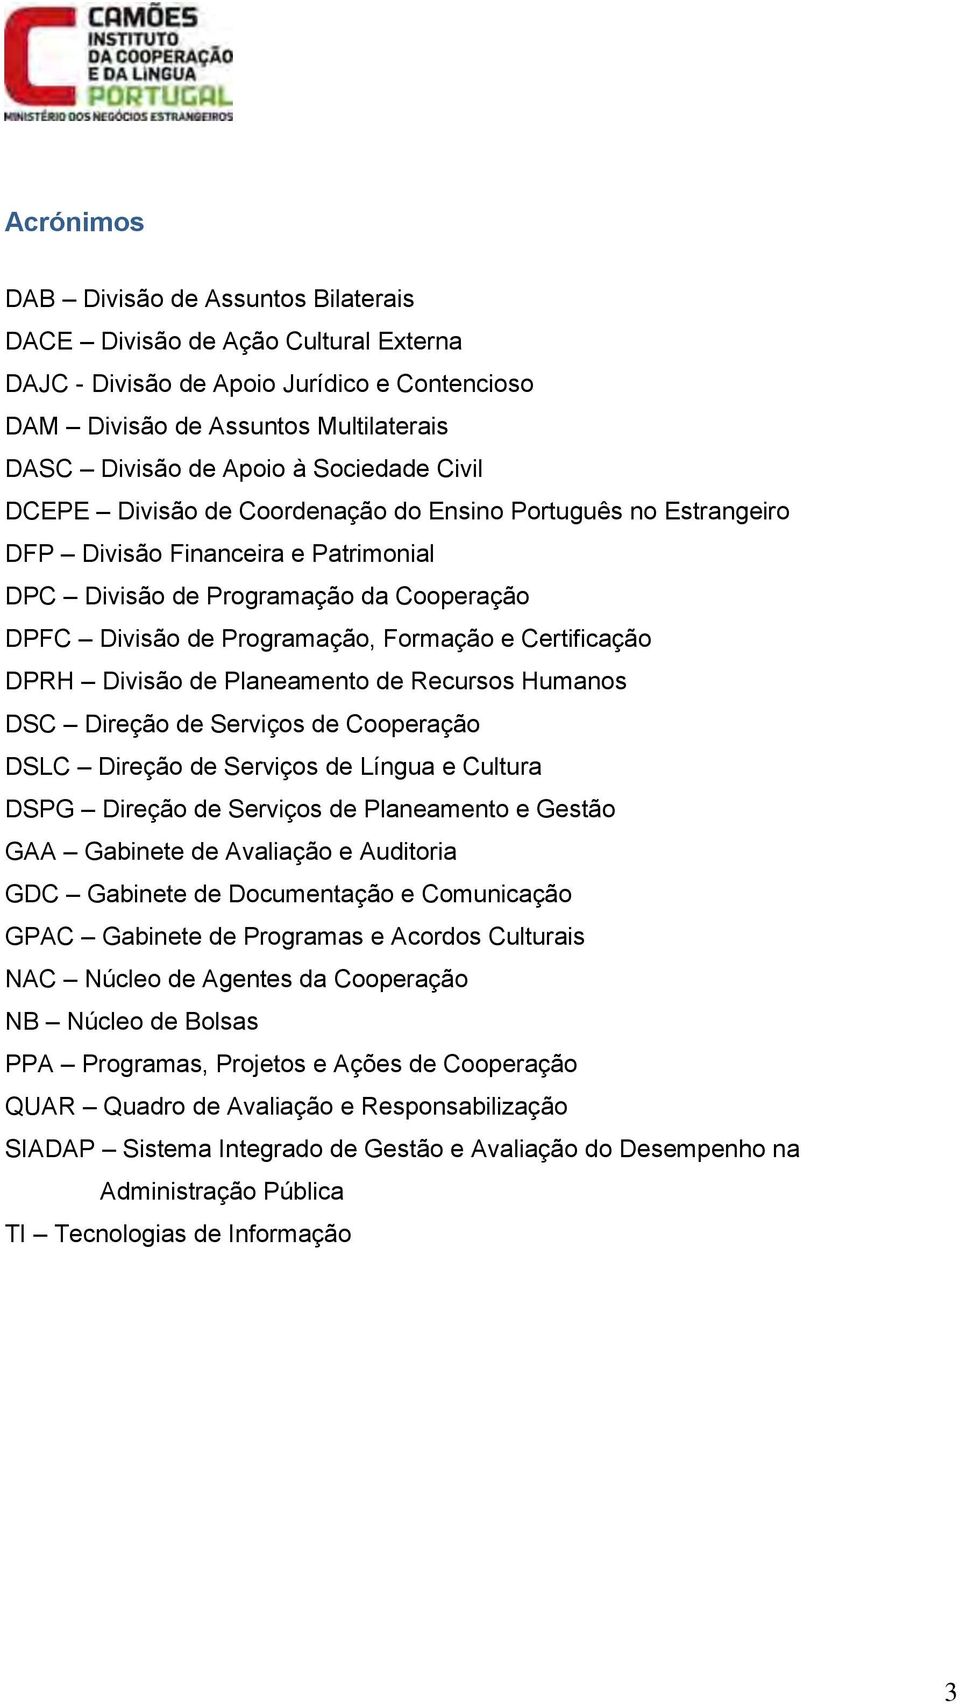 Certificação DPRH Divisão de Planeamento de Recursos Humanos DSC Direção de Serviços de Cooperação DSLC Direção de Serviços de Língua e Cultura DSPG Direção de Serviços de Planeamento e Gestão GAA